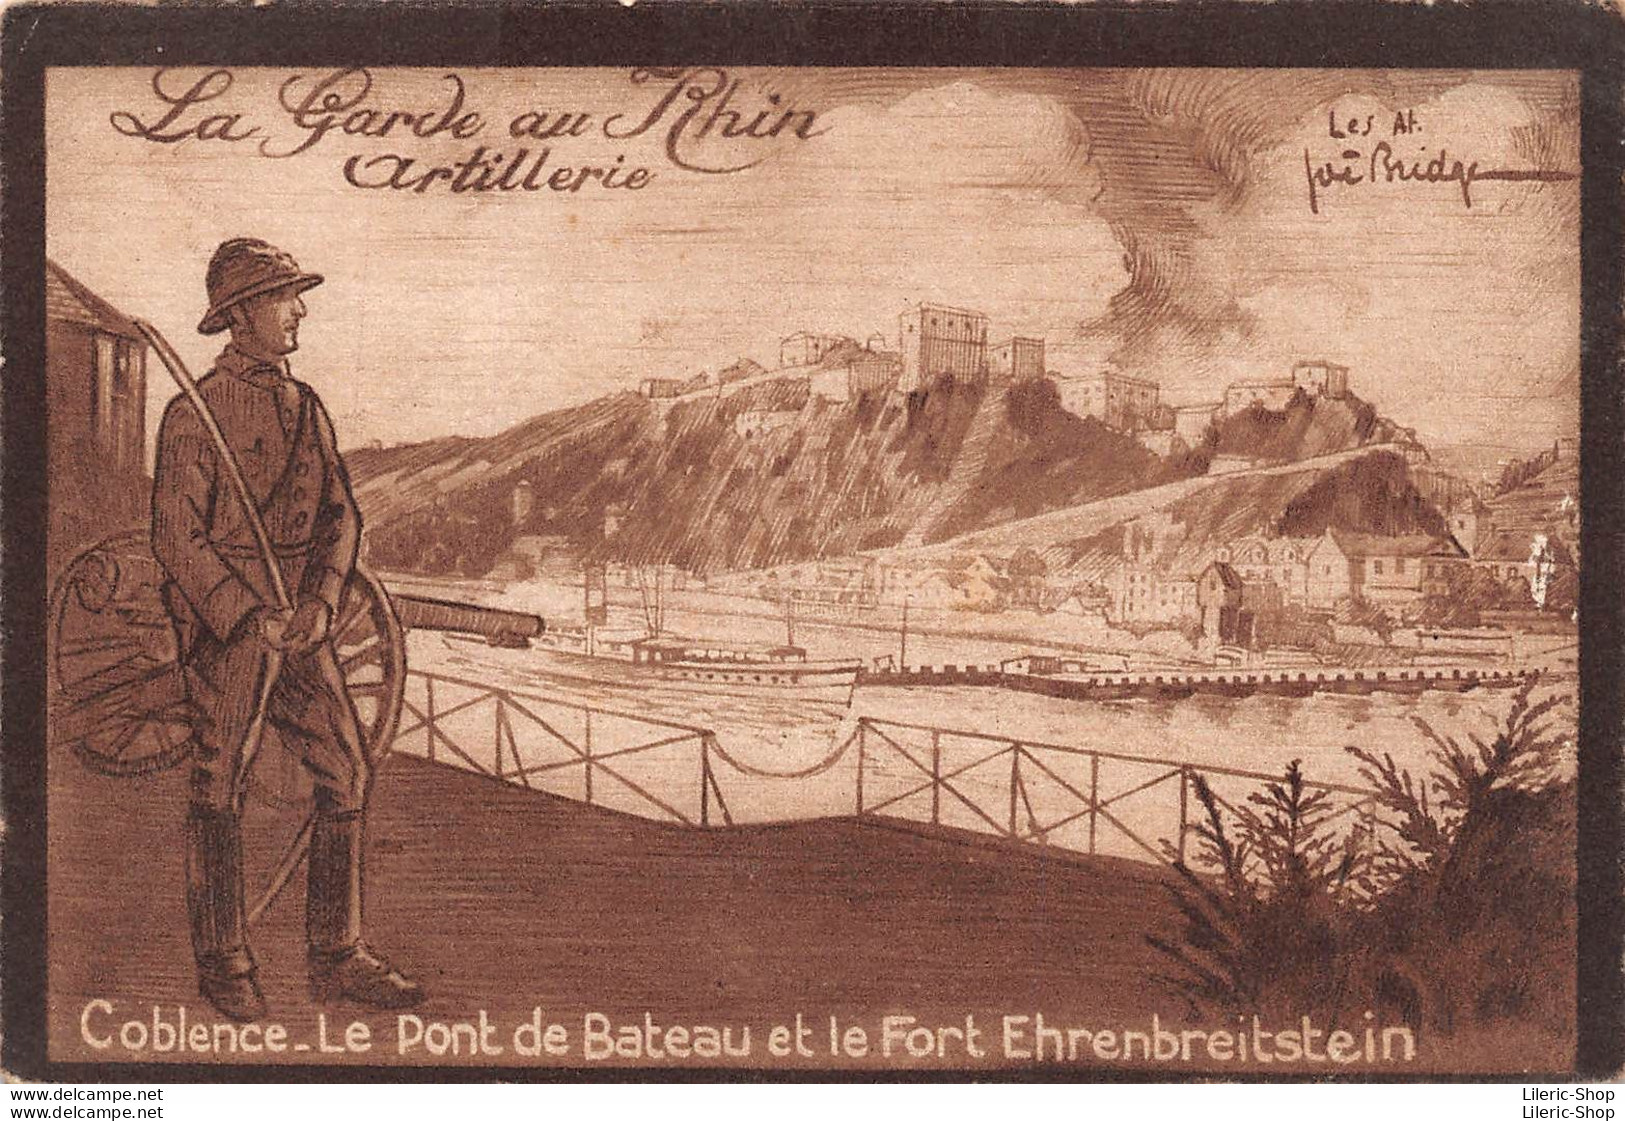 La Garde Au Rhin Artillerie Coblence. Le Pont De Bateau Et Le Fort Ehrenbreitstein Illustrateur Joë BRIDGE - Kasernen